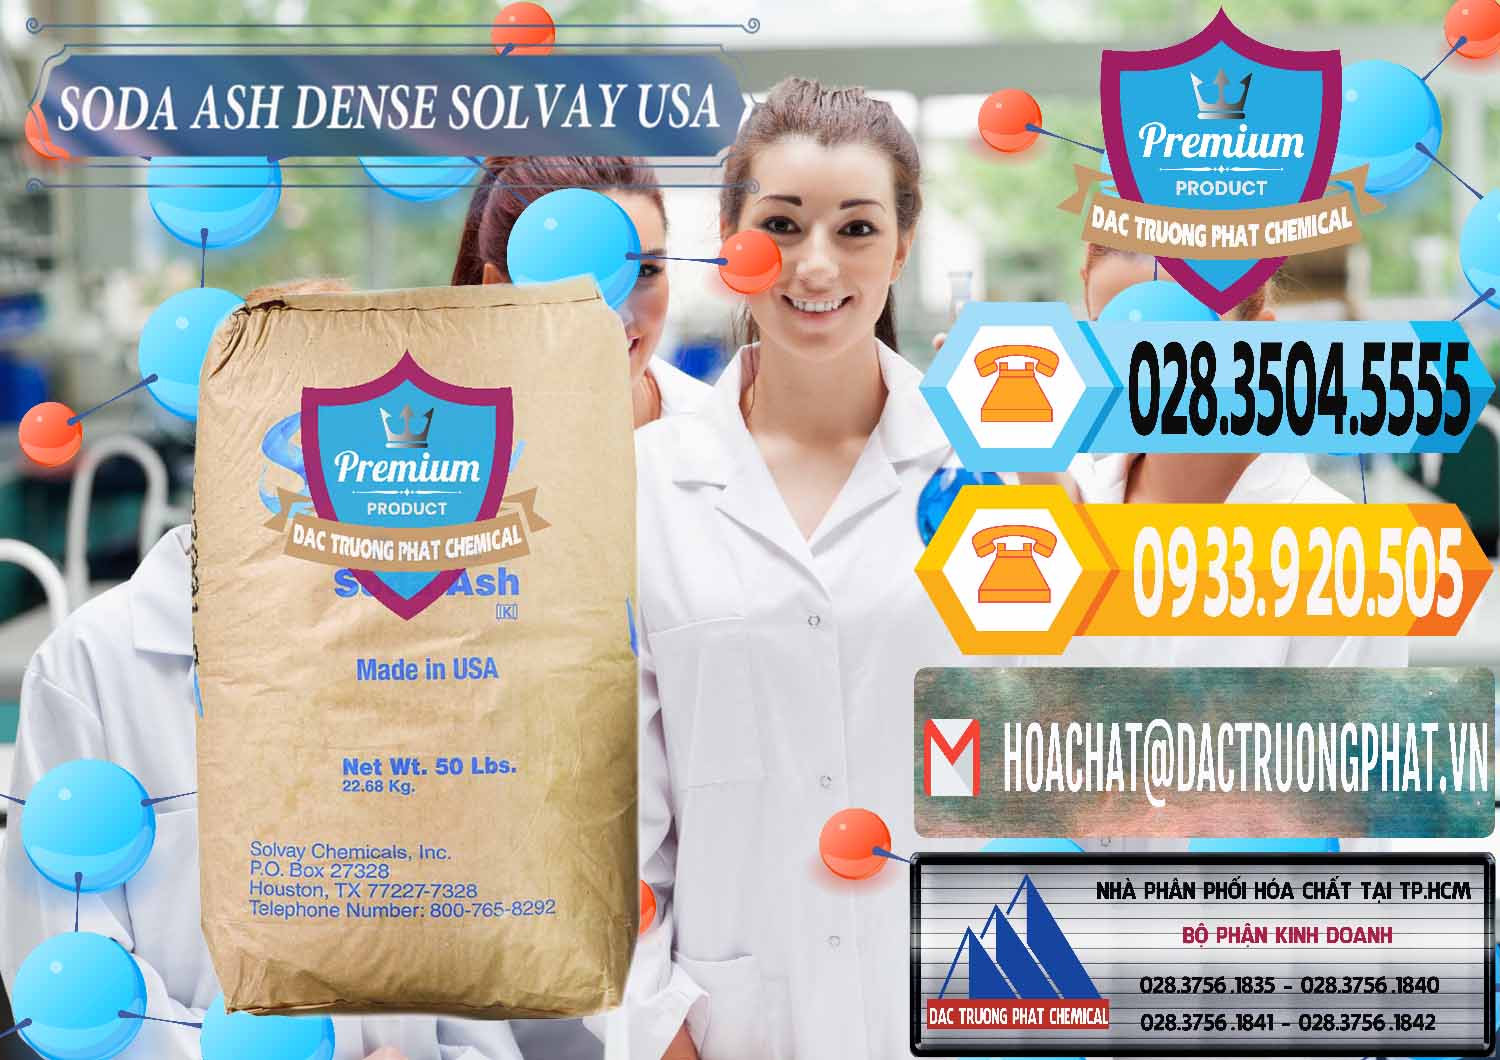 Cty chuyên phân phối & bán Soda Ash Dense - NA2CO3 Solvay Mỹ USA - 0337 - Kinh doanh _ phân phối hóa chất tại TP.HCM - hoachattayrua.net